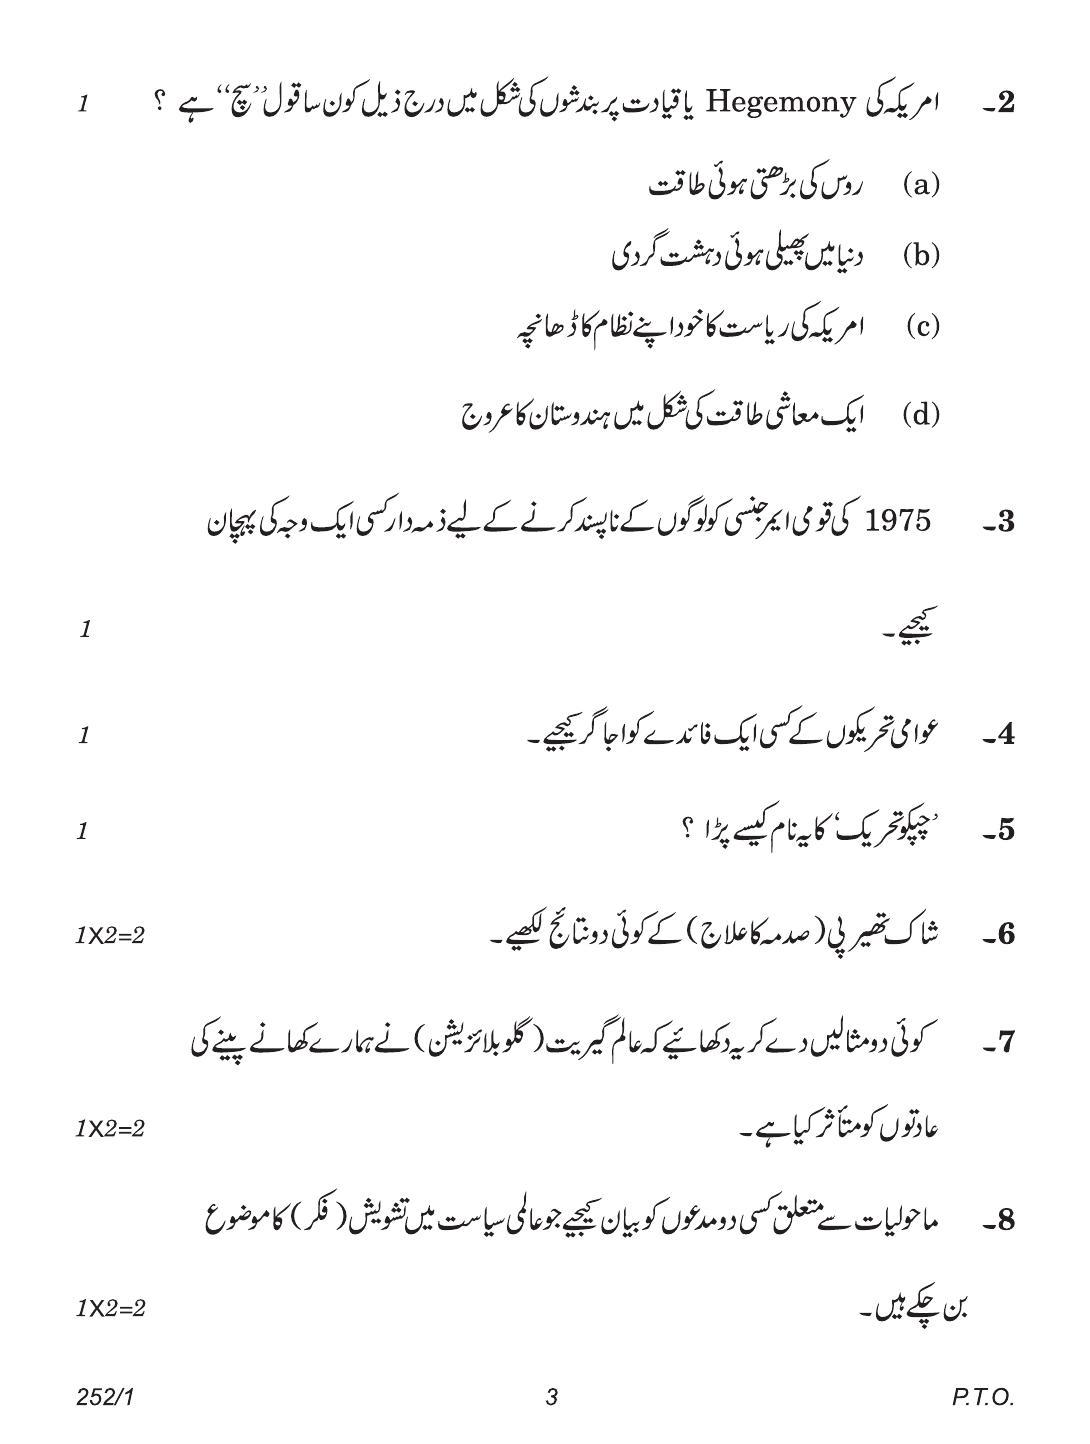 CBSE Class 12 252-1 (Political Science Urdu) 2018 Question Paper - Page 3